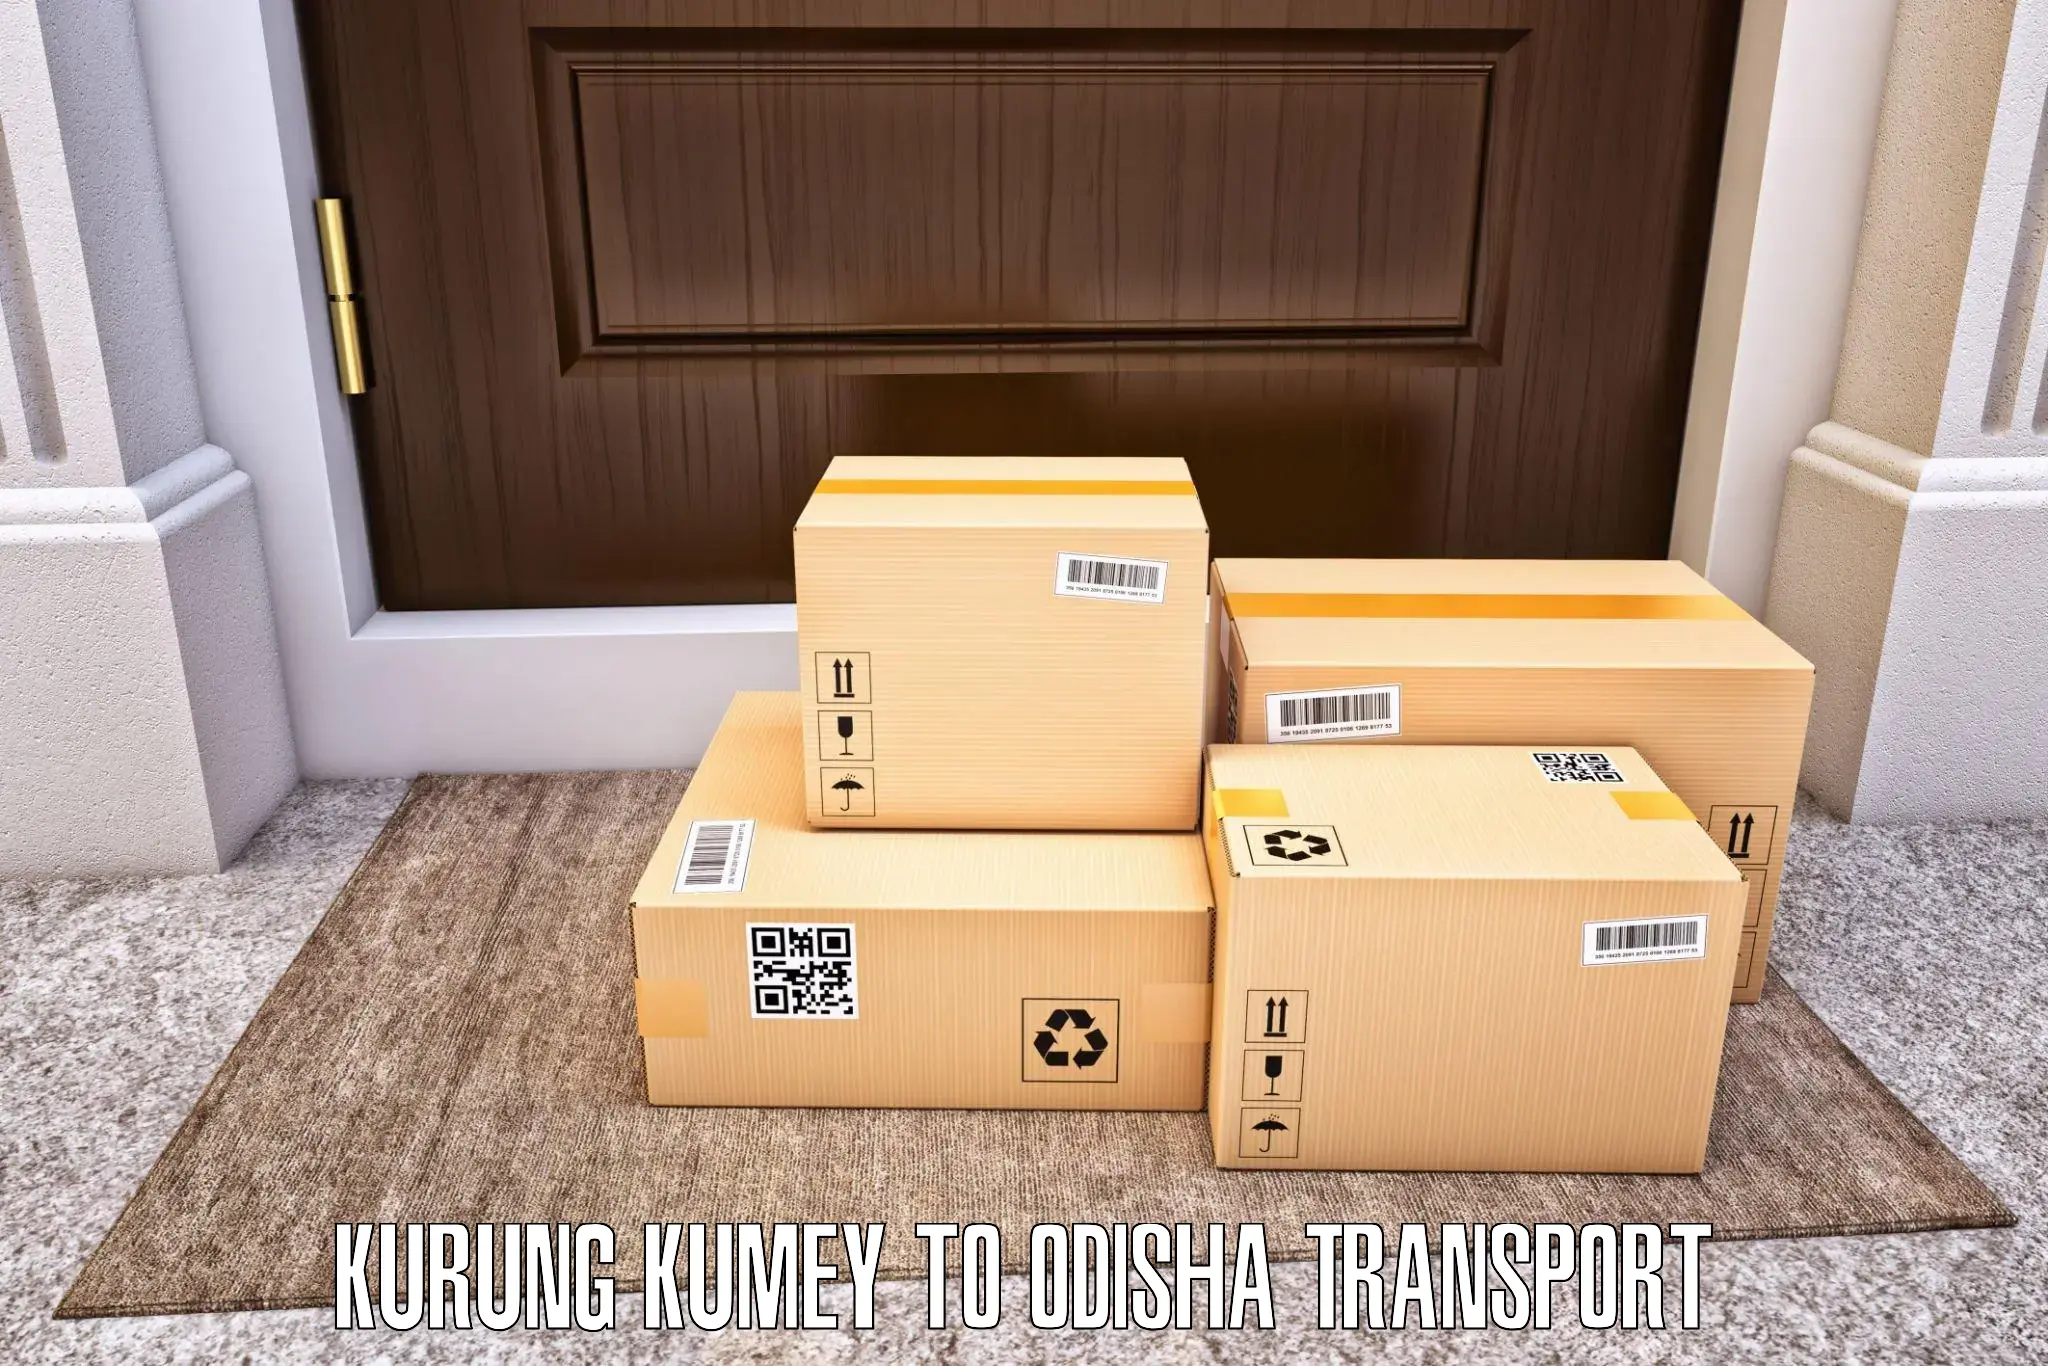 Logistics transportation services Kurung Kumey to Puri